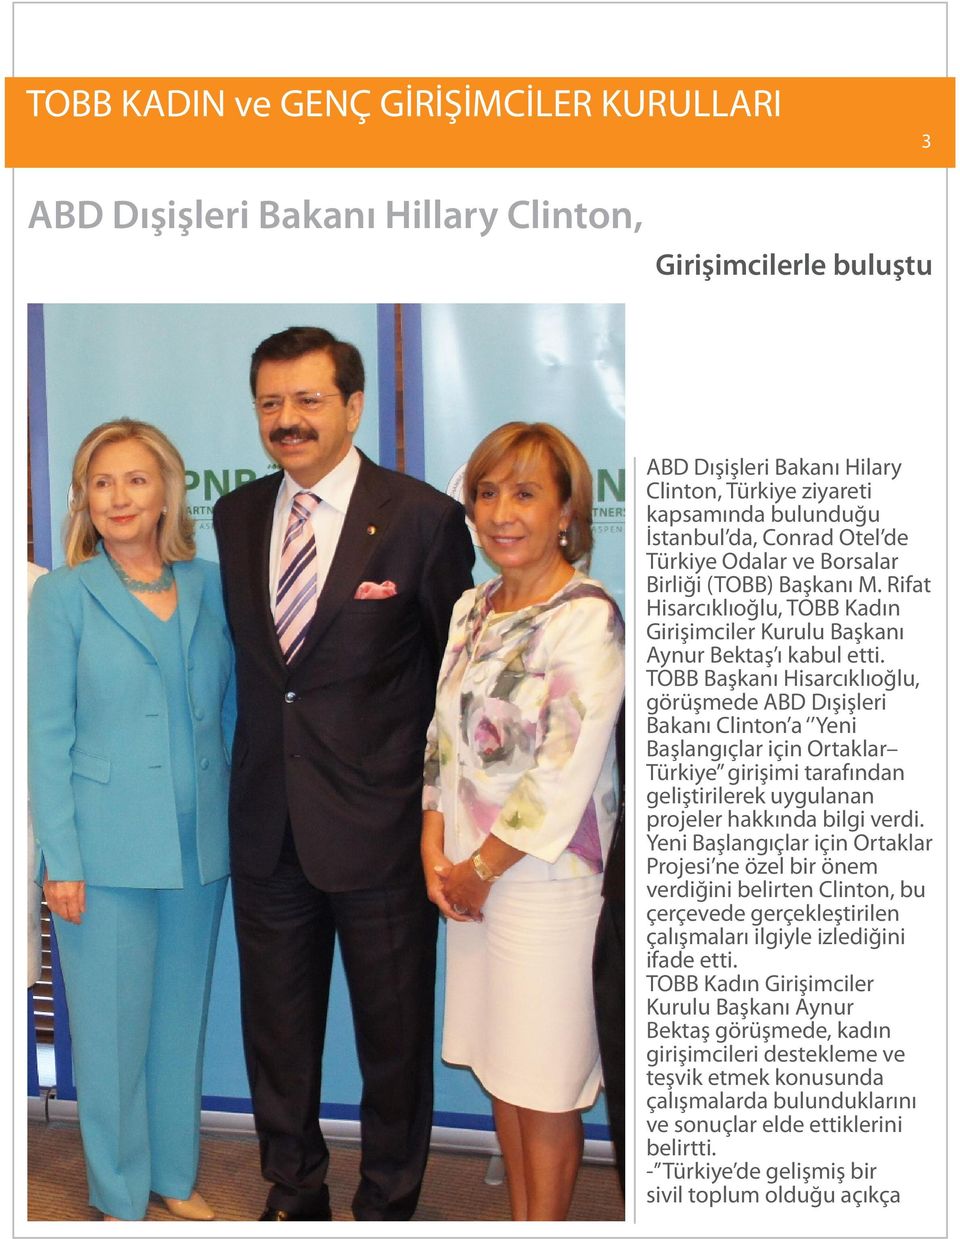 TOBB Başkanı Hisarcıklıoğlu, görüşmede ABD Dışişleri Bakanı Clinton a Yeni Başlangıçlar için Ortaklar Türkiye girişimi tarafından geliştirilerek uygulanan projeler hakkında bilgi verdi.